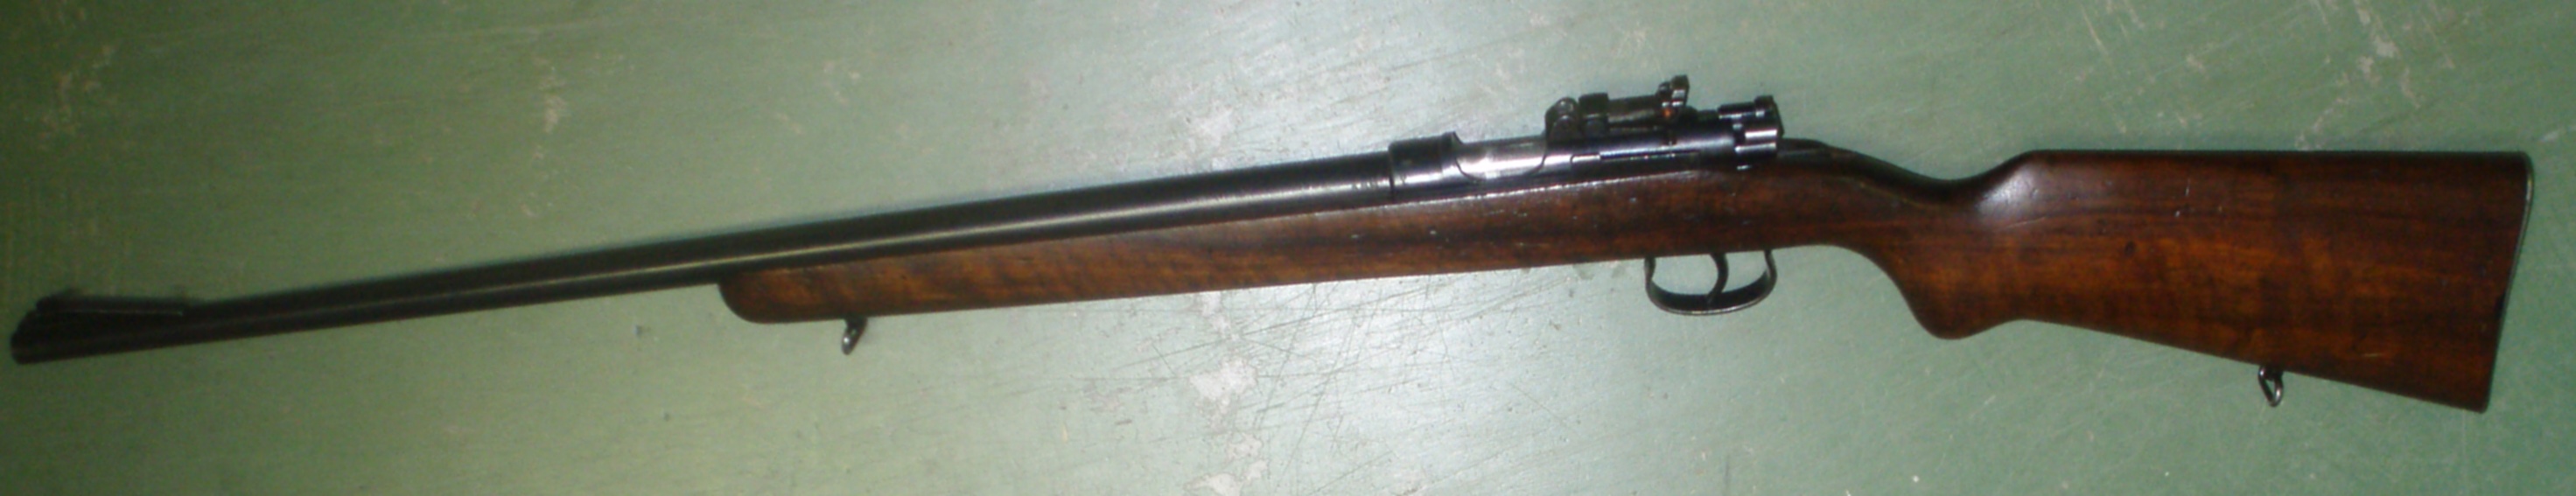 Mauser Mle 45 A